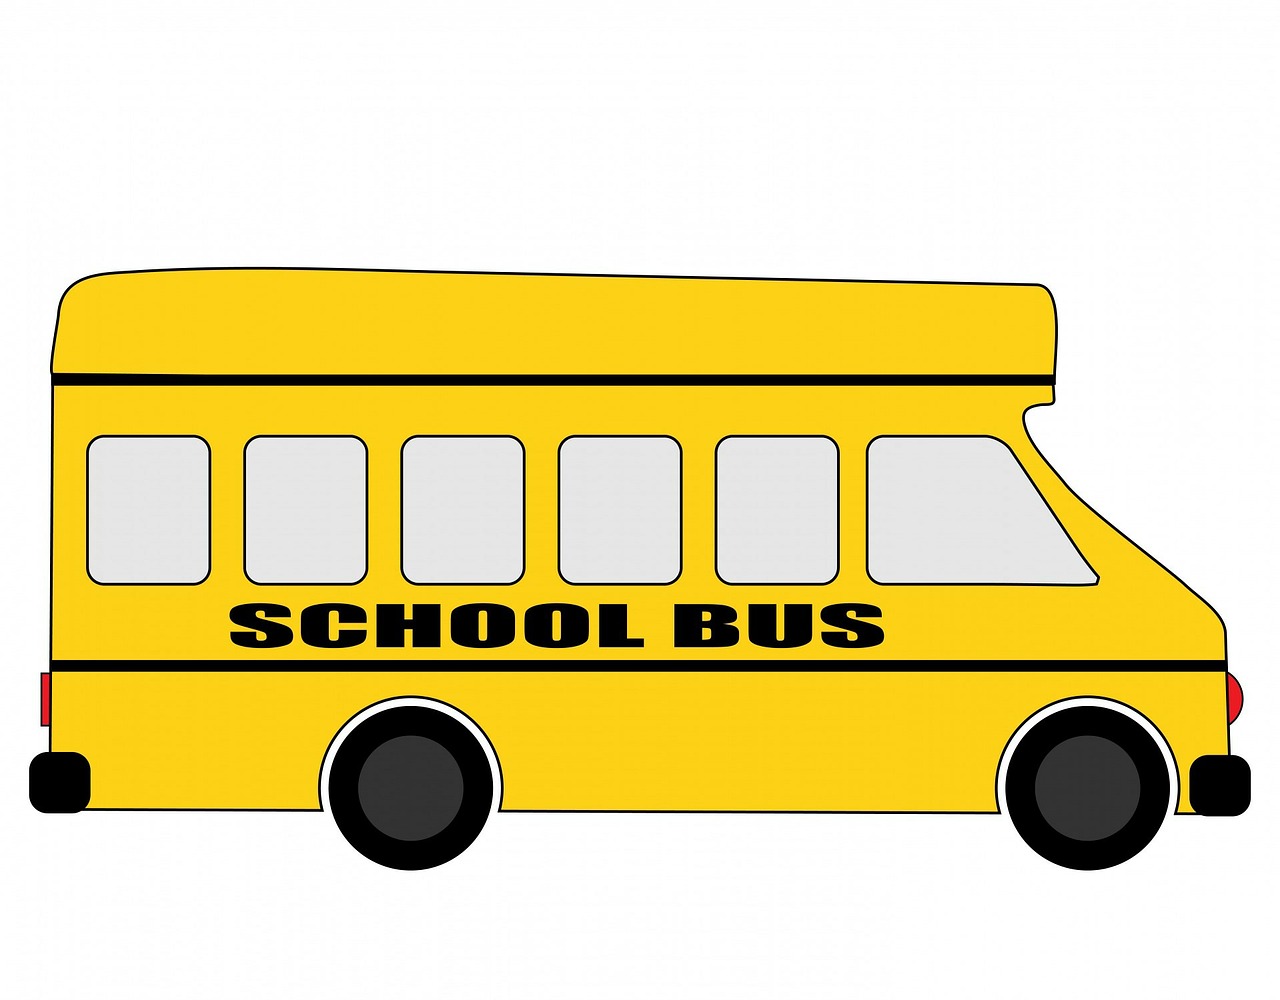 school bus schoolbus bus free photo